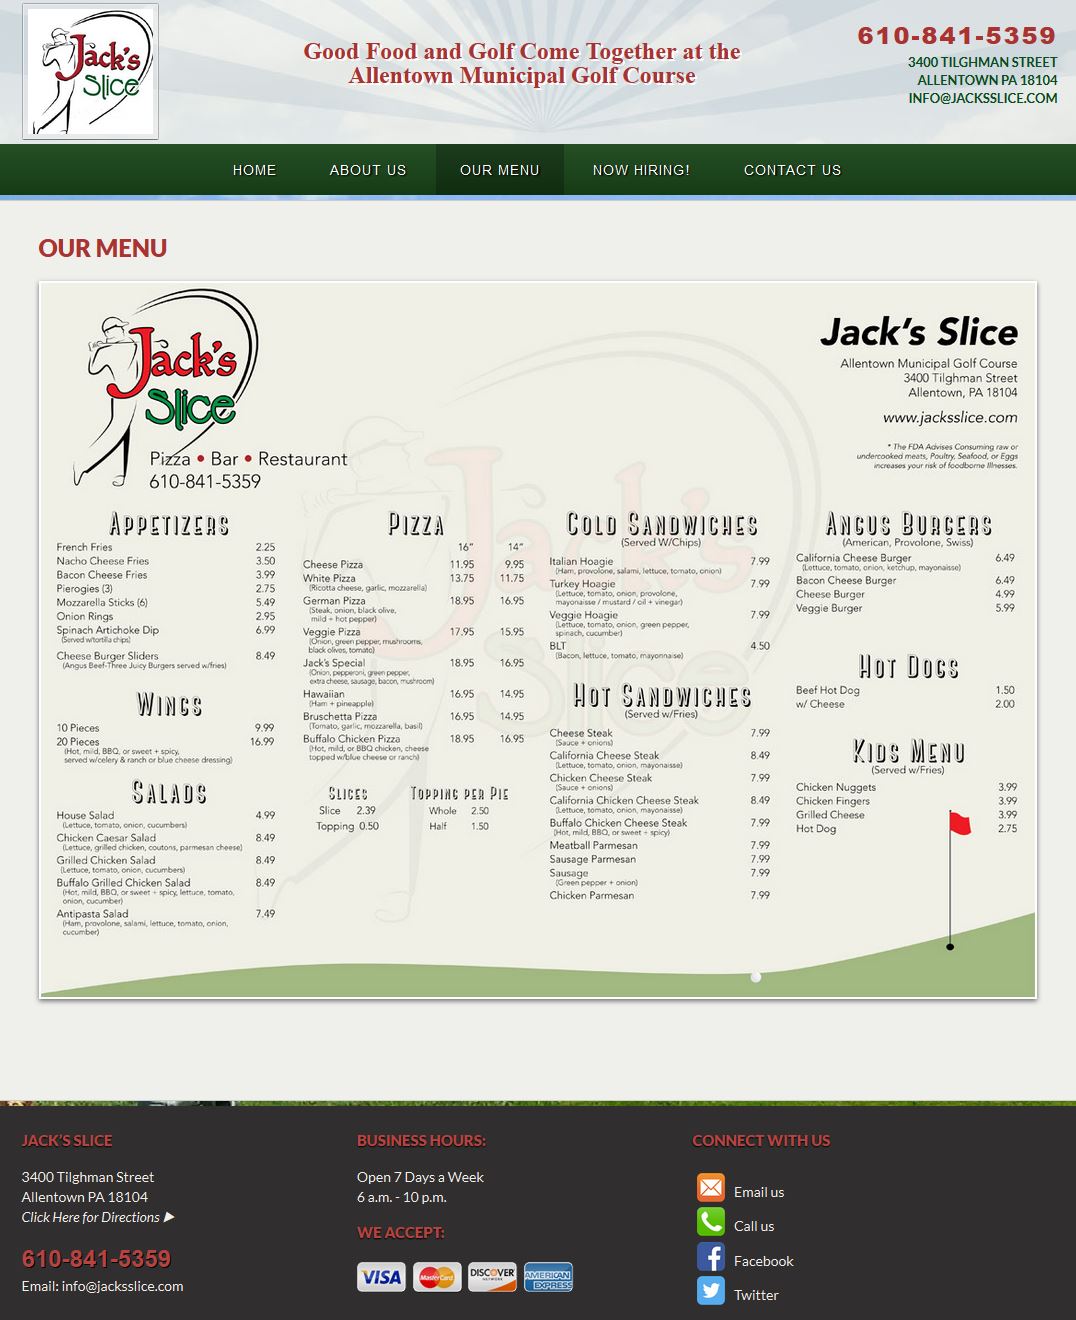 Jack's Slice